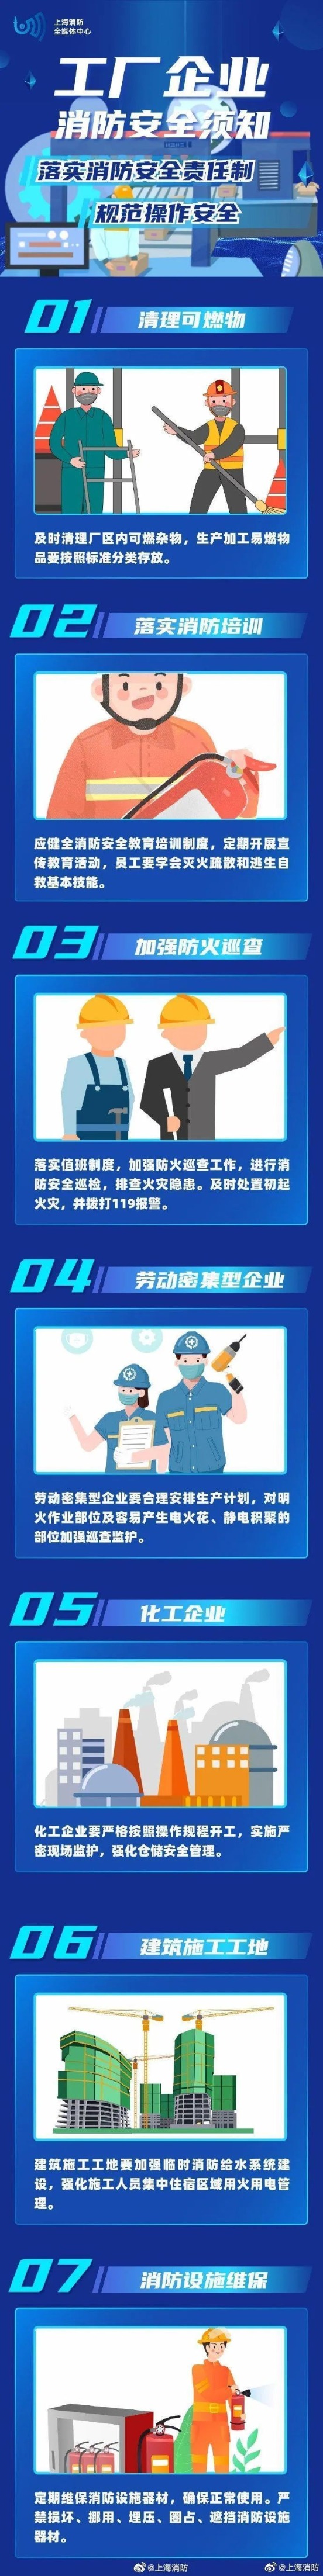 已致一死一伤！上海石化火灾情况通报 应急部工作组赶赴现场…市民：“五六公里外都能听到燃烧声”！